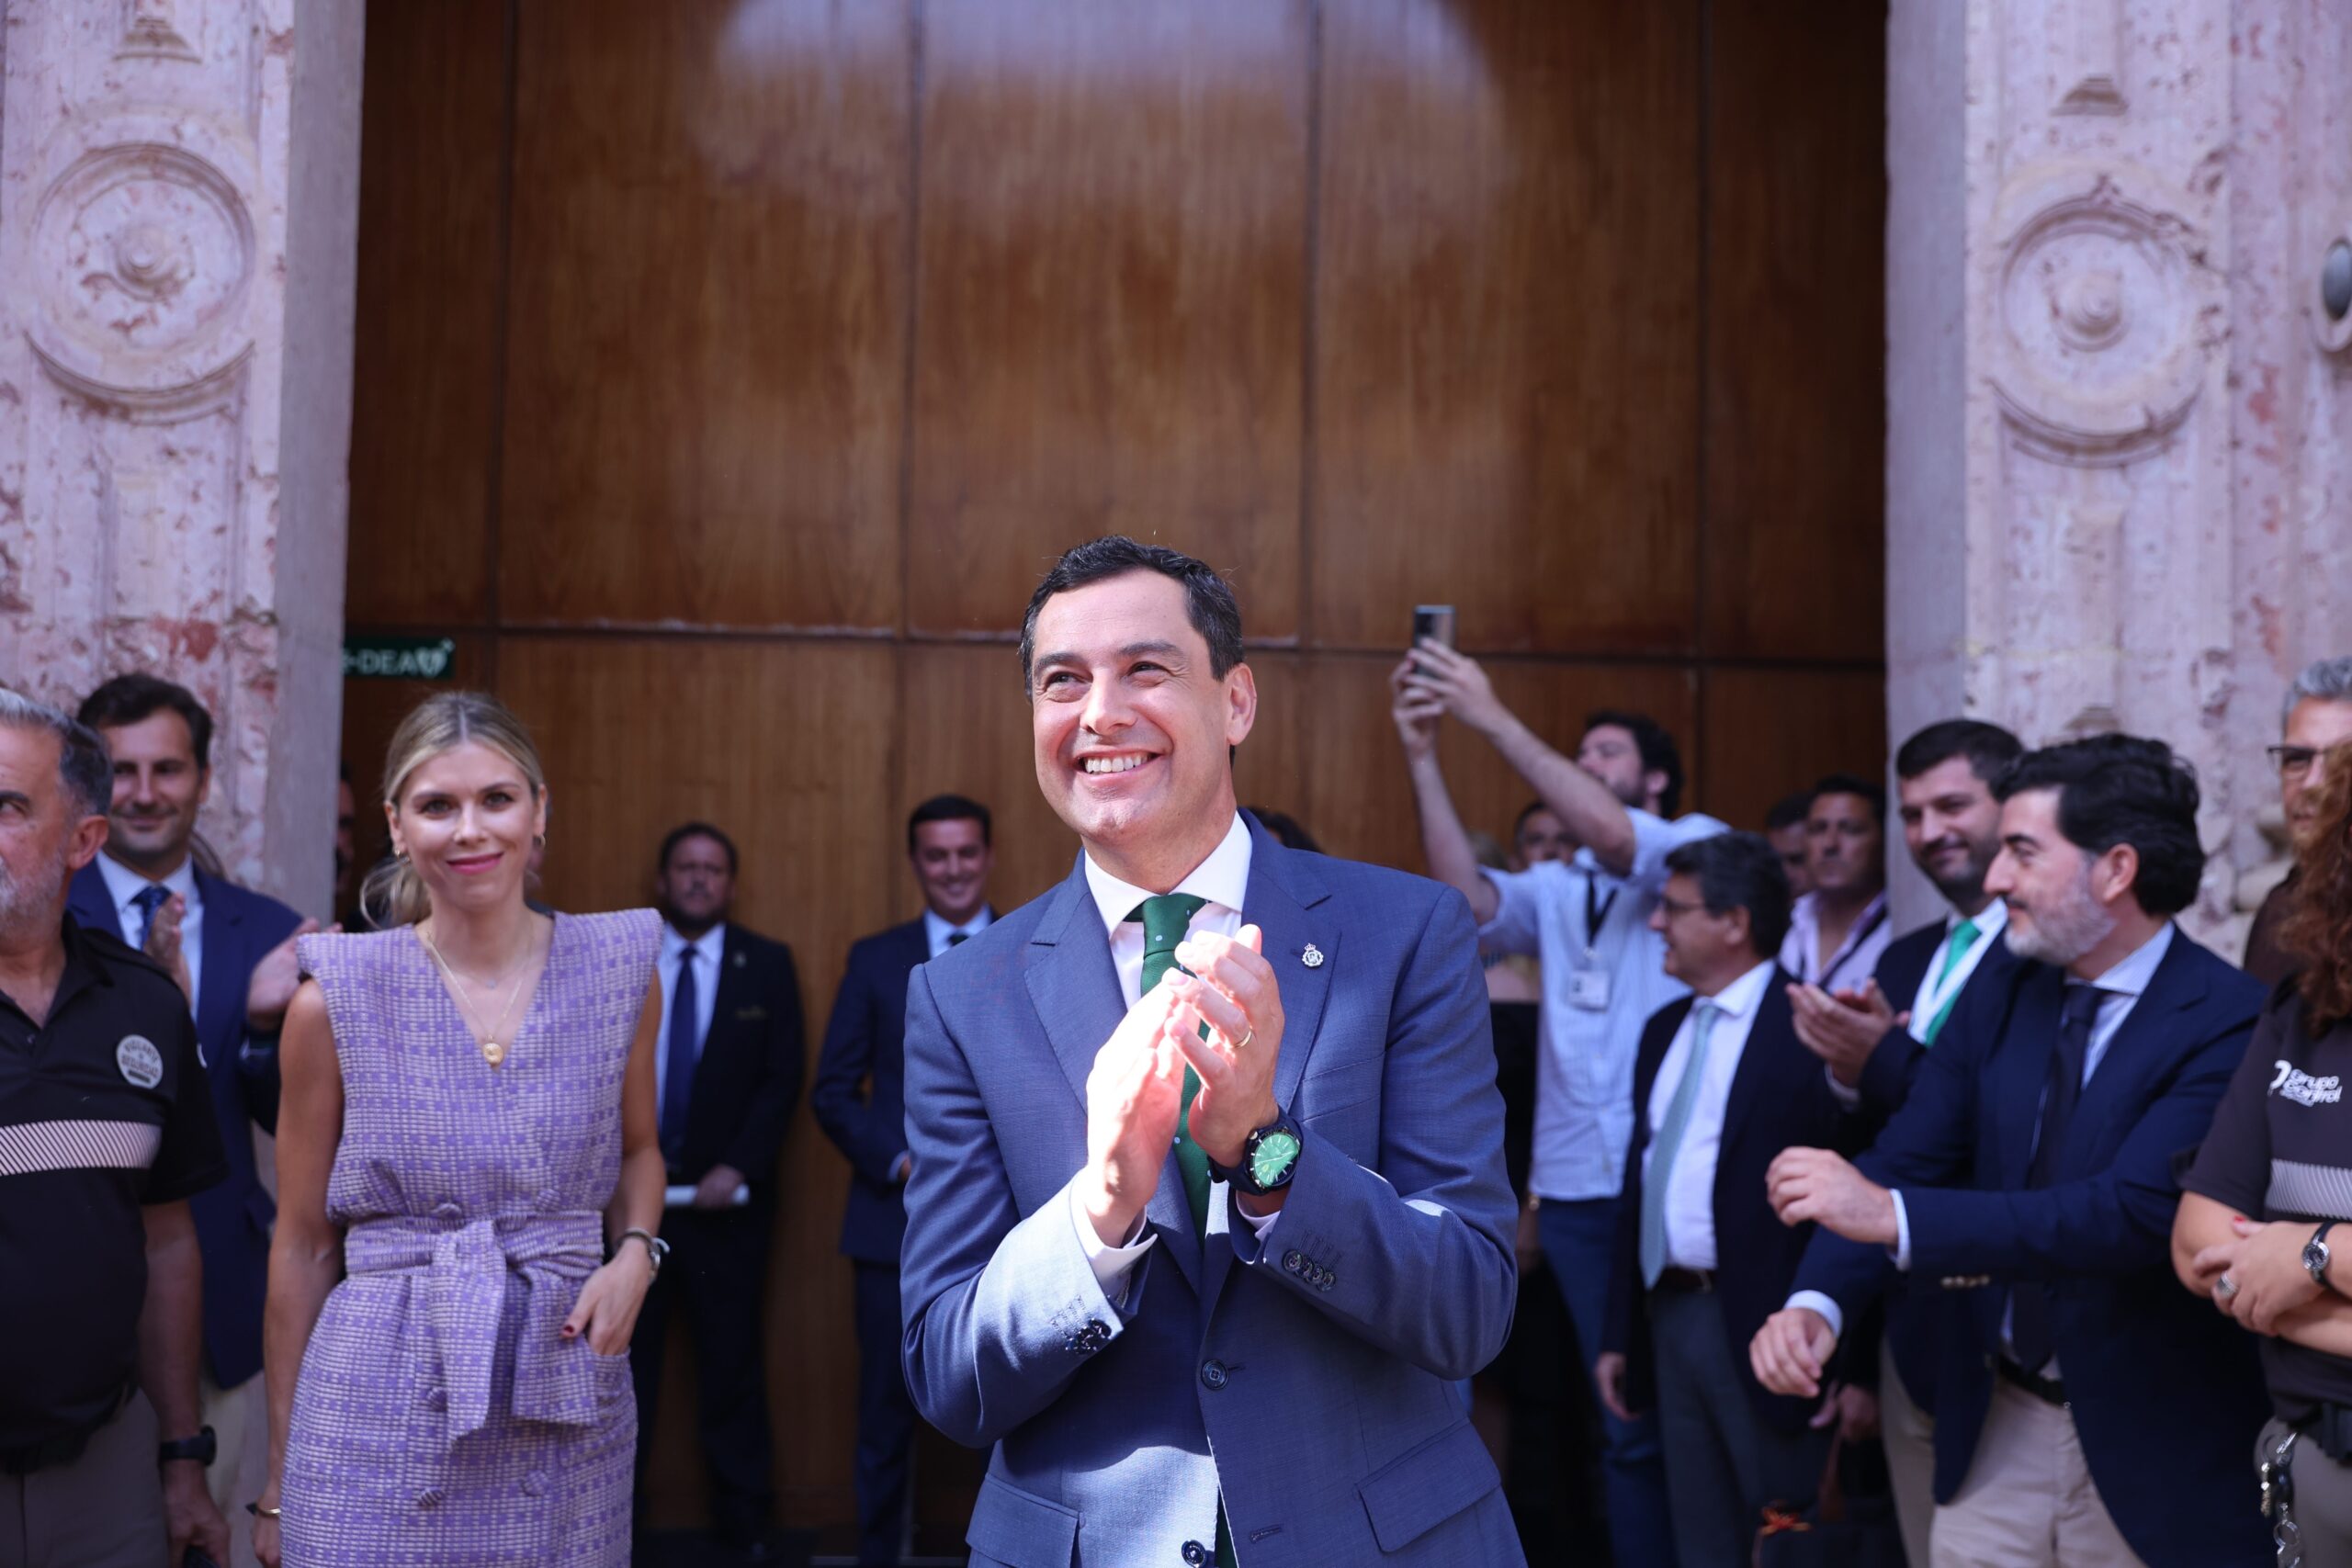 El recién investido presidente de la Junta de Andalucía, Juanma Moreno, a las puertas del Parlamento con su mujer, Manuel Villena, en segundo plano este jueves. FOTO/ Europa Press